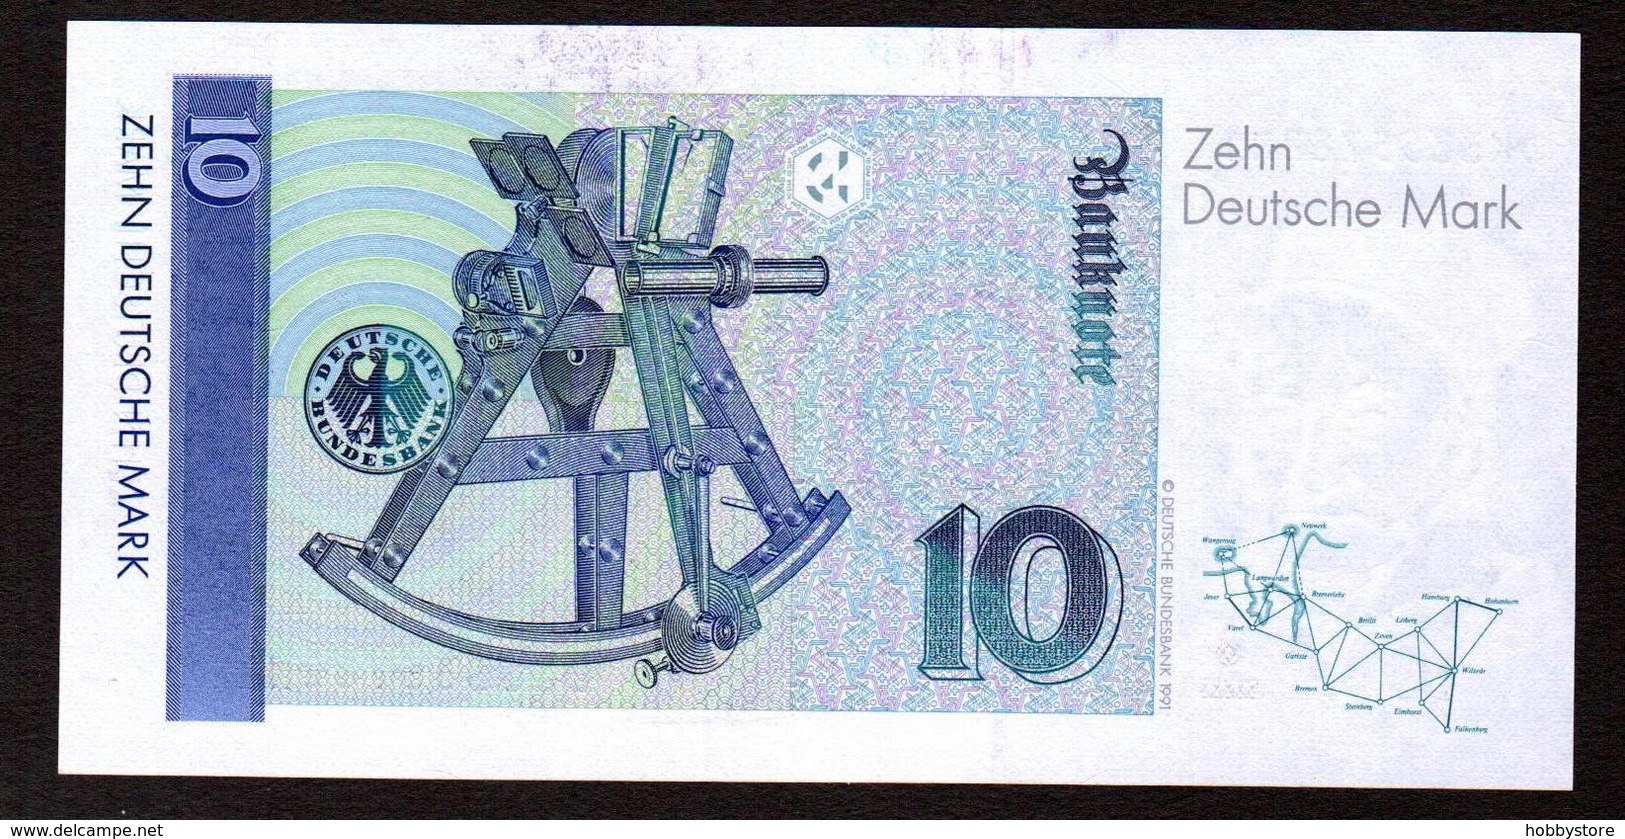 Germany 10 Mark 1993 UNC - 10 Deutsche Mark